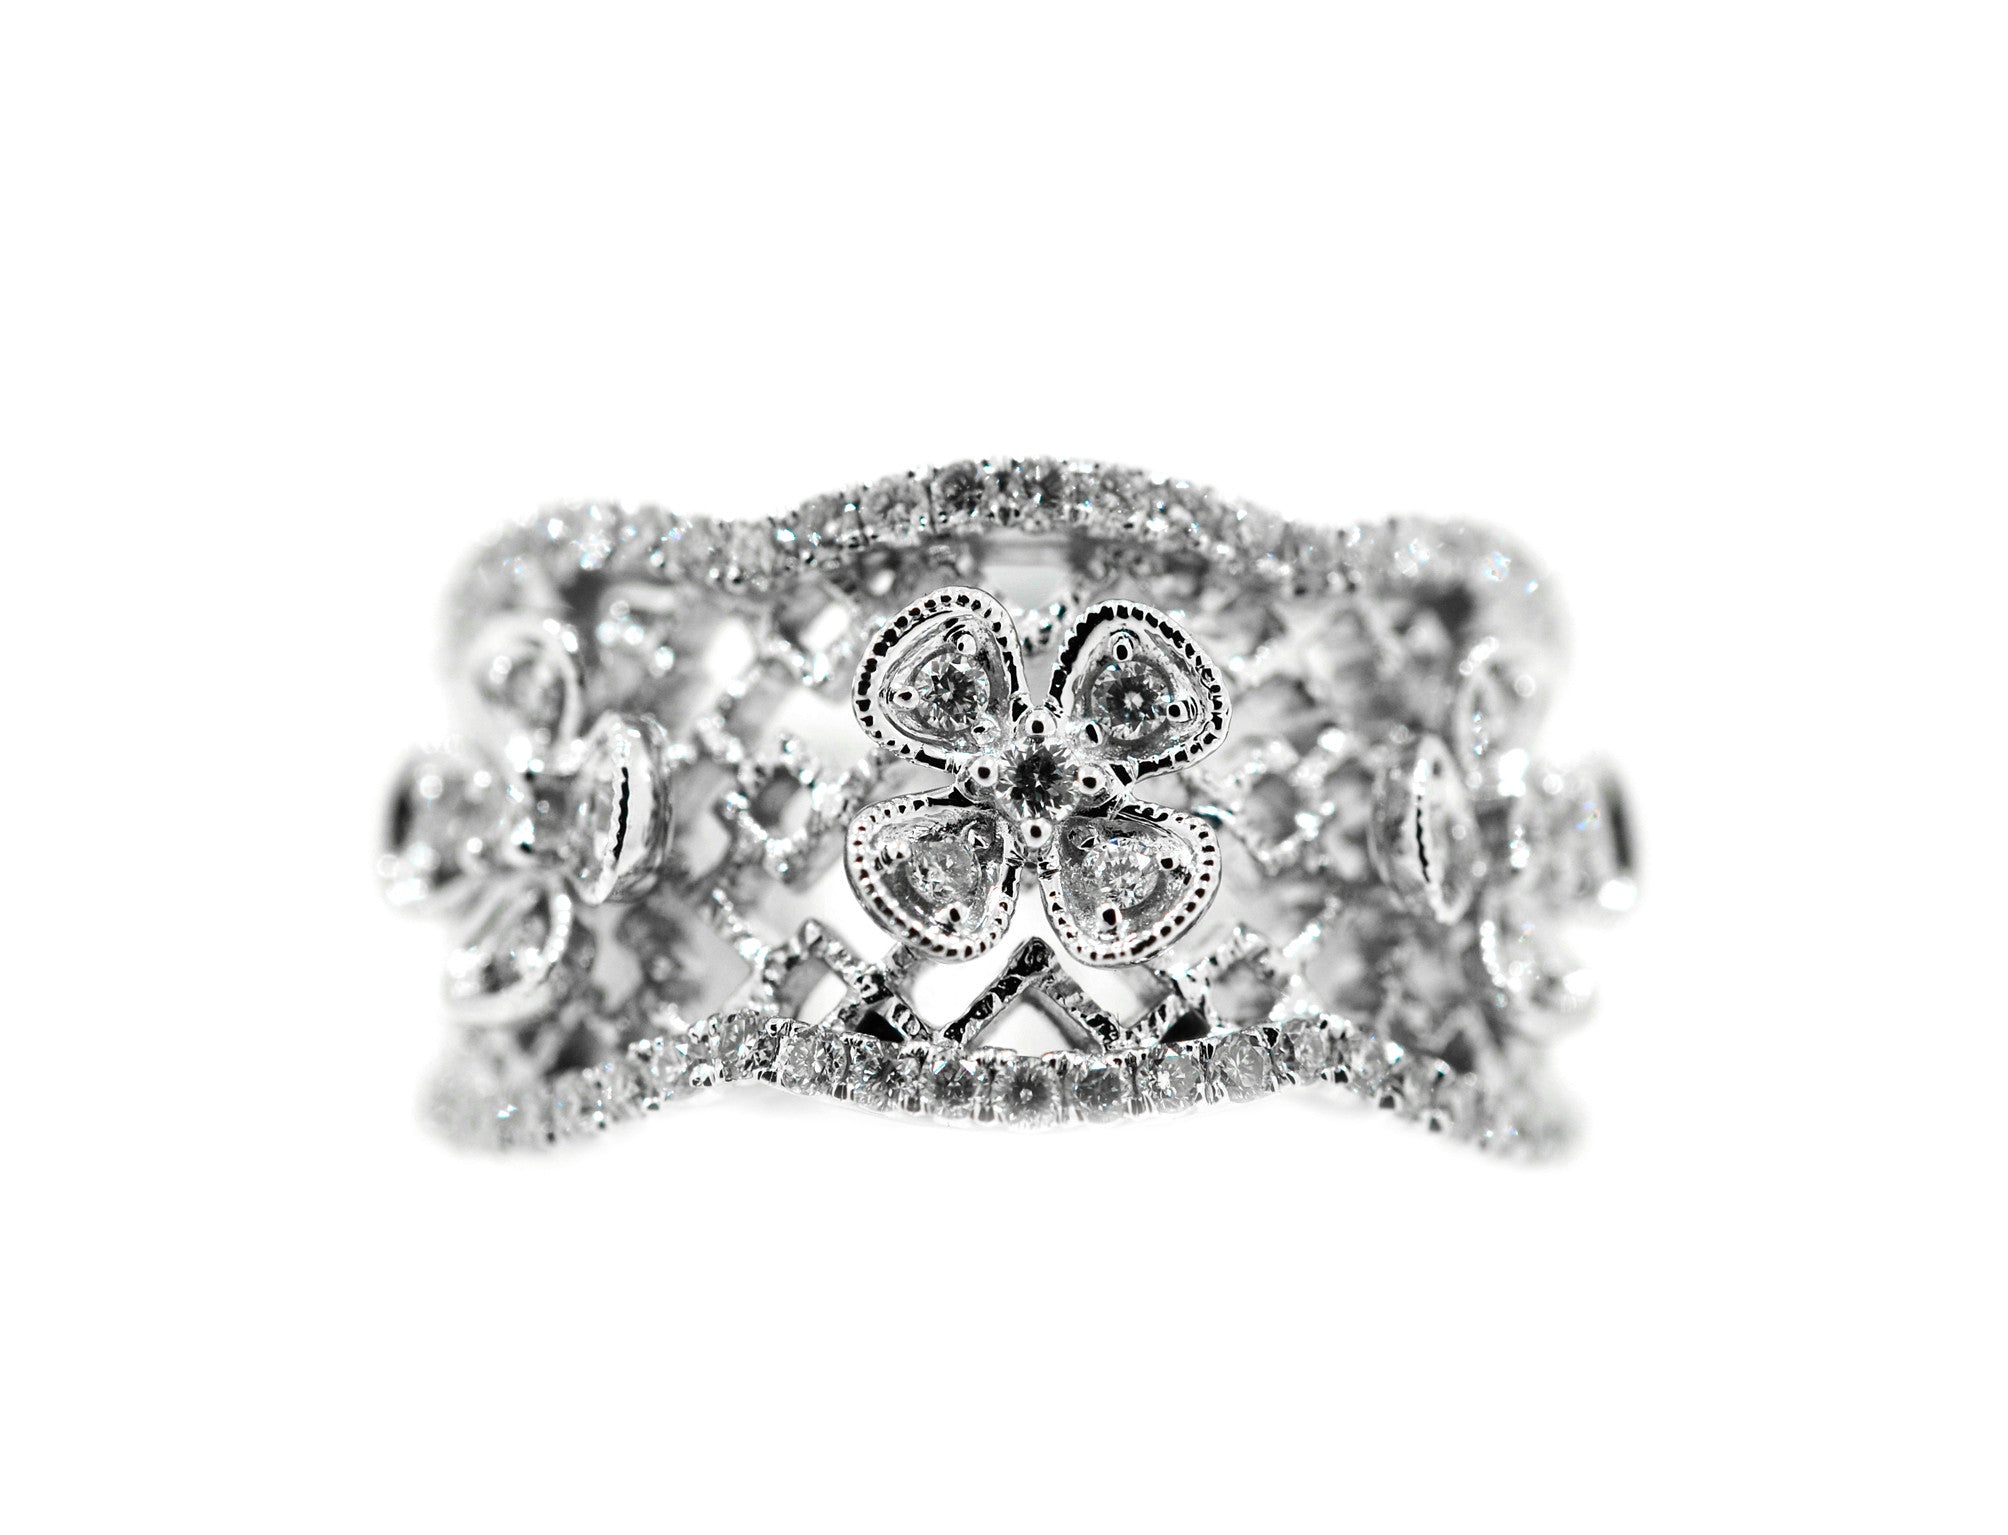 Diamond Flower Dress Ring in White Gold - ForeverJewels Design Studio 8